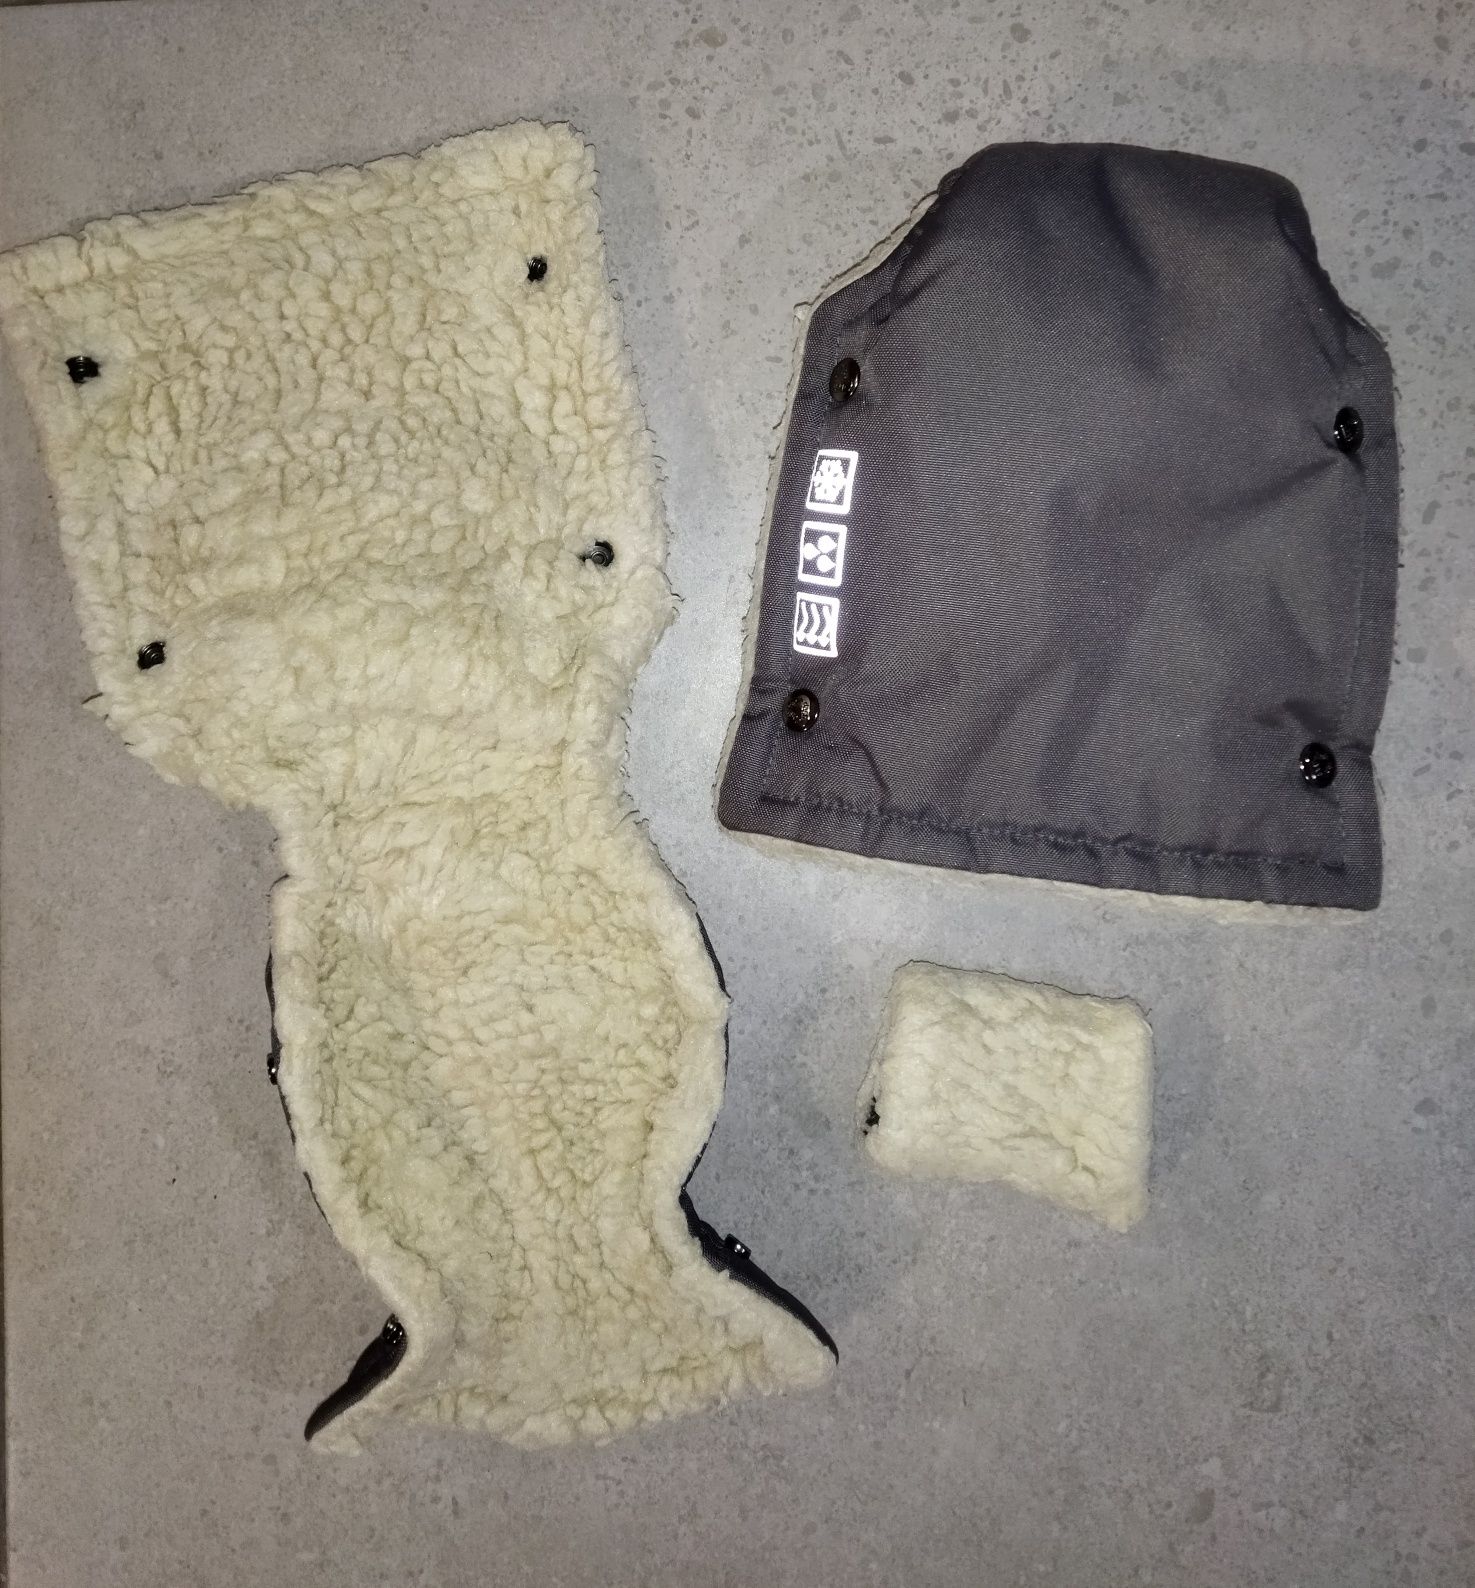 Візочок Carrelo Vista + зимові рукавички